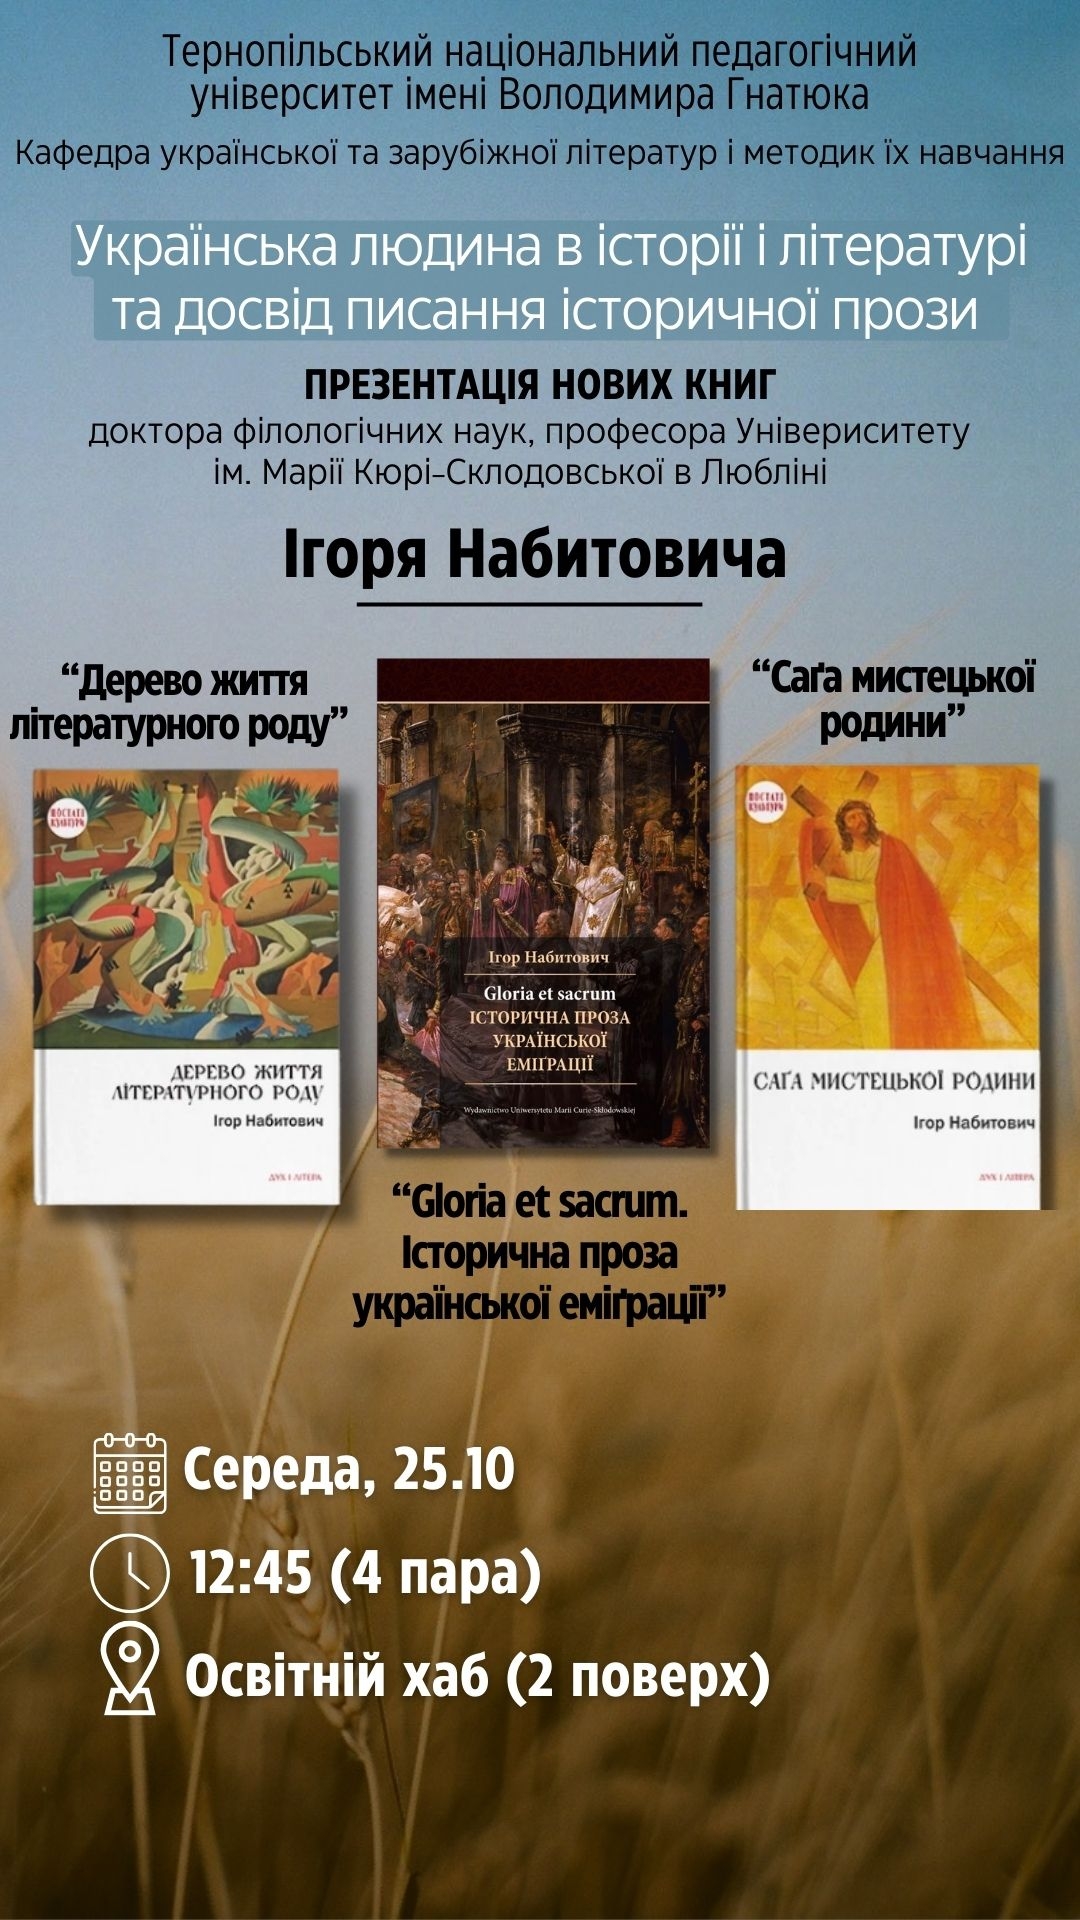 Презентація книг проф.І.Набитовича